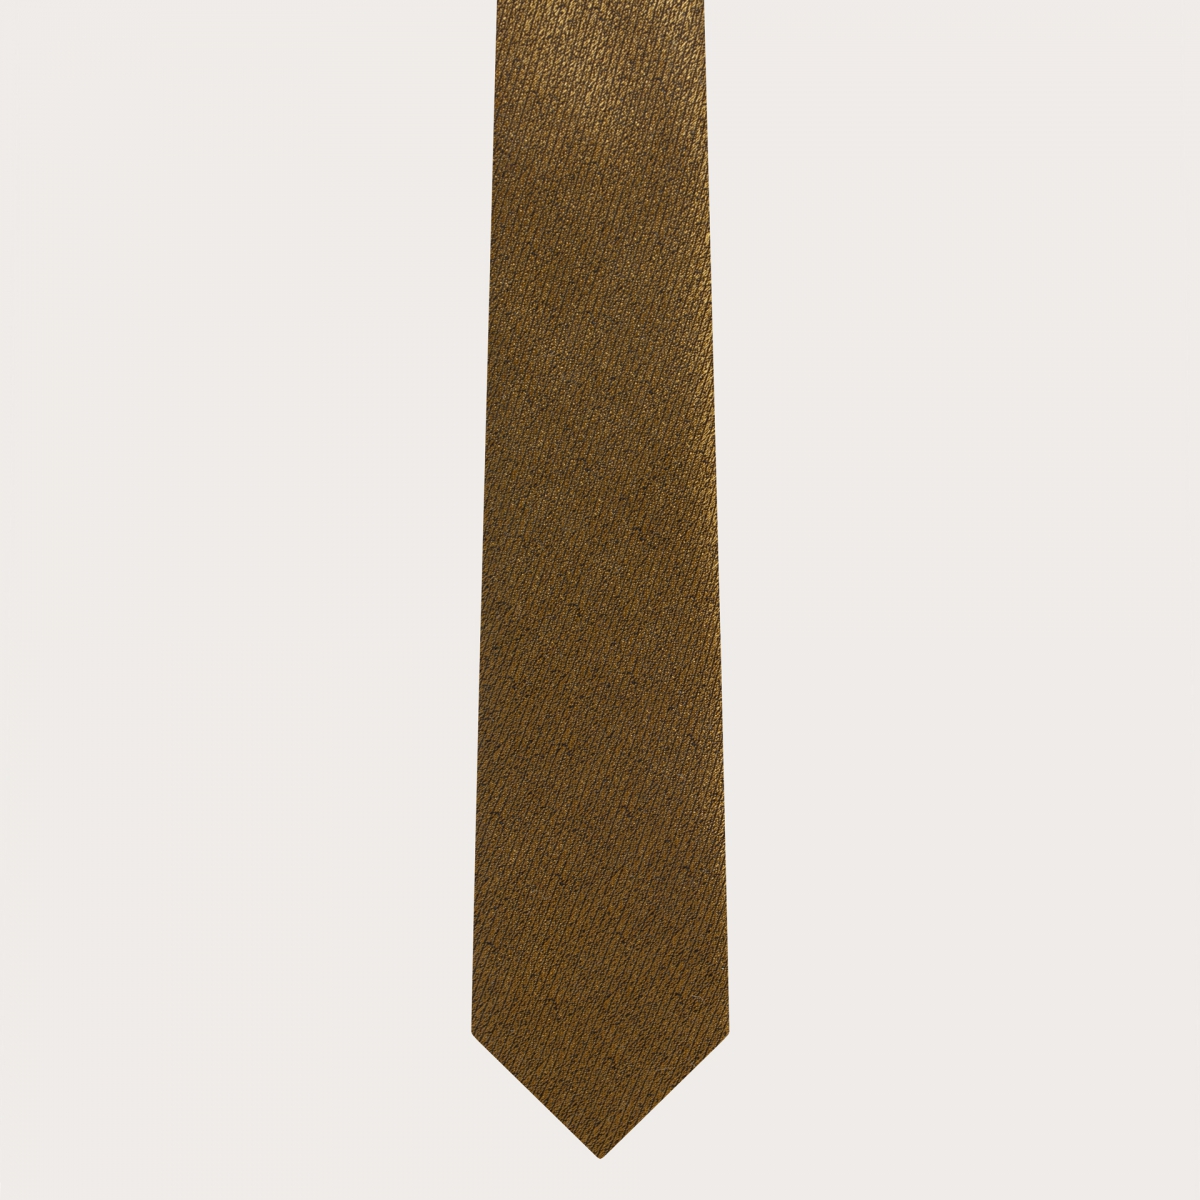 BRUCLE Élégant ensemble bretelles et cravate en soie jacquard or irisé